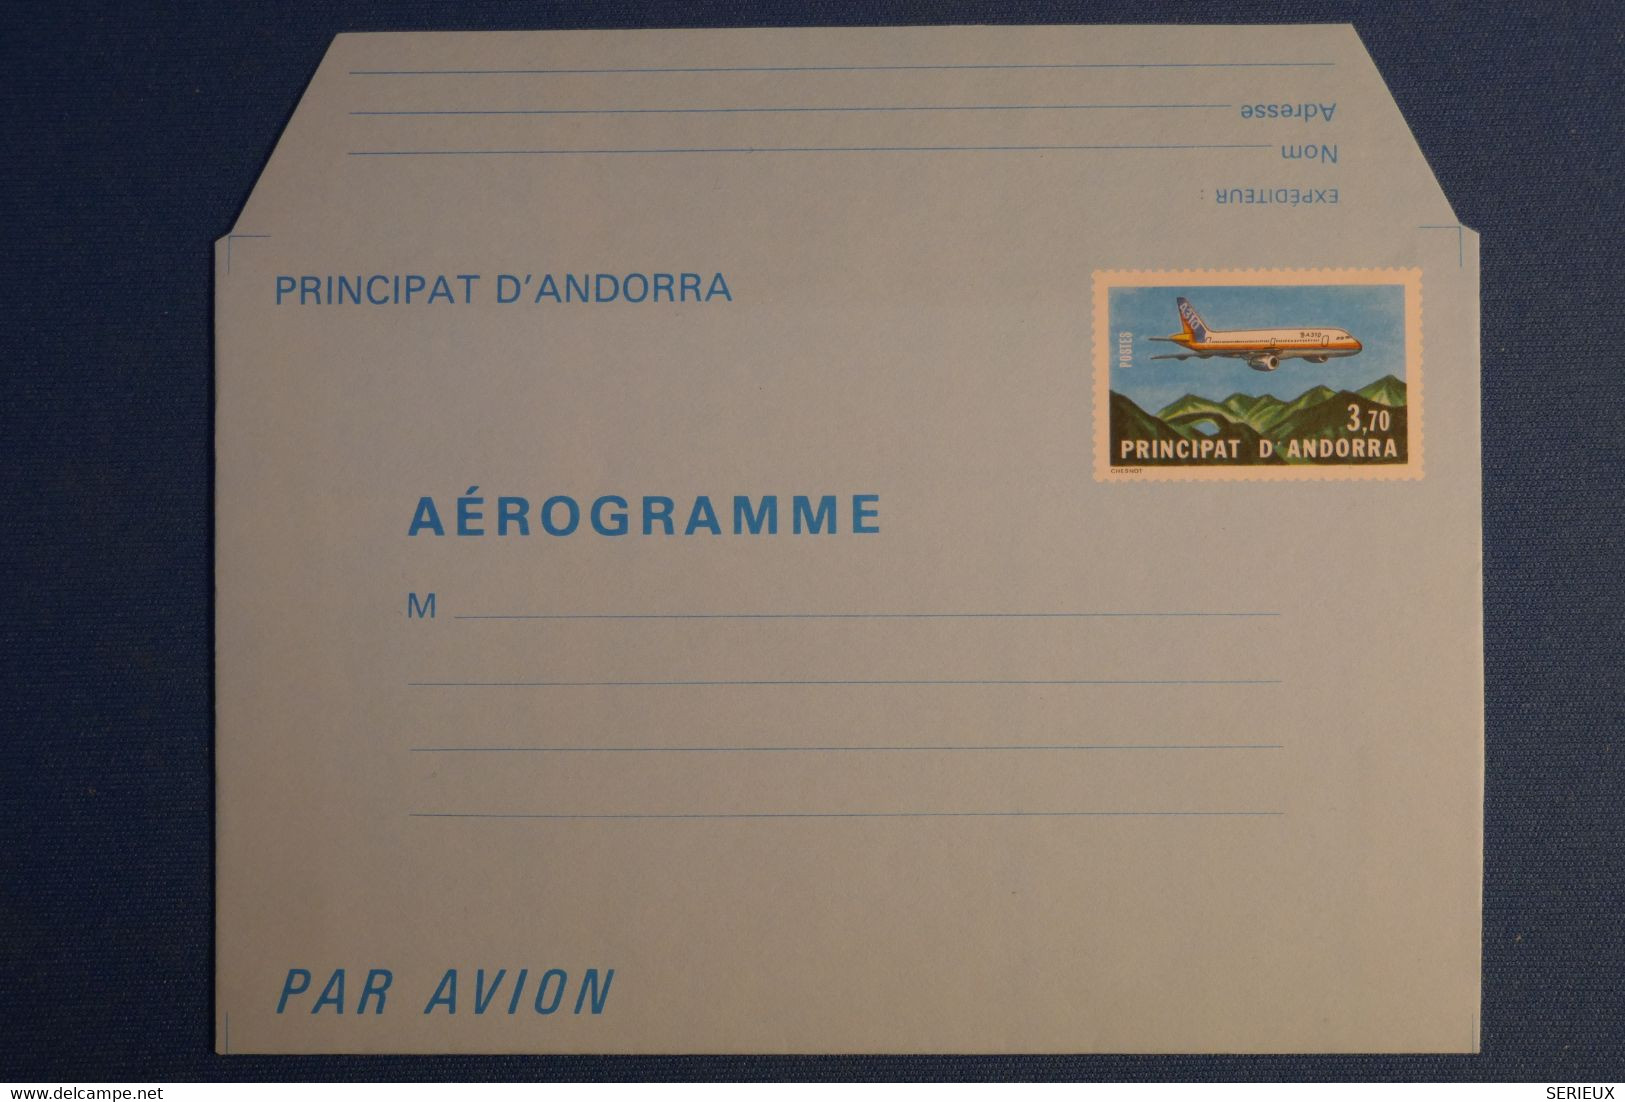 P1 ANDORRE BELLE LETTRE AEROGRAMME ASSEZ RARE 1987 NON VOYAGEE NEUVE 3.70 - Correo Aéreo